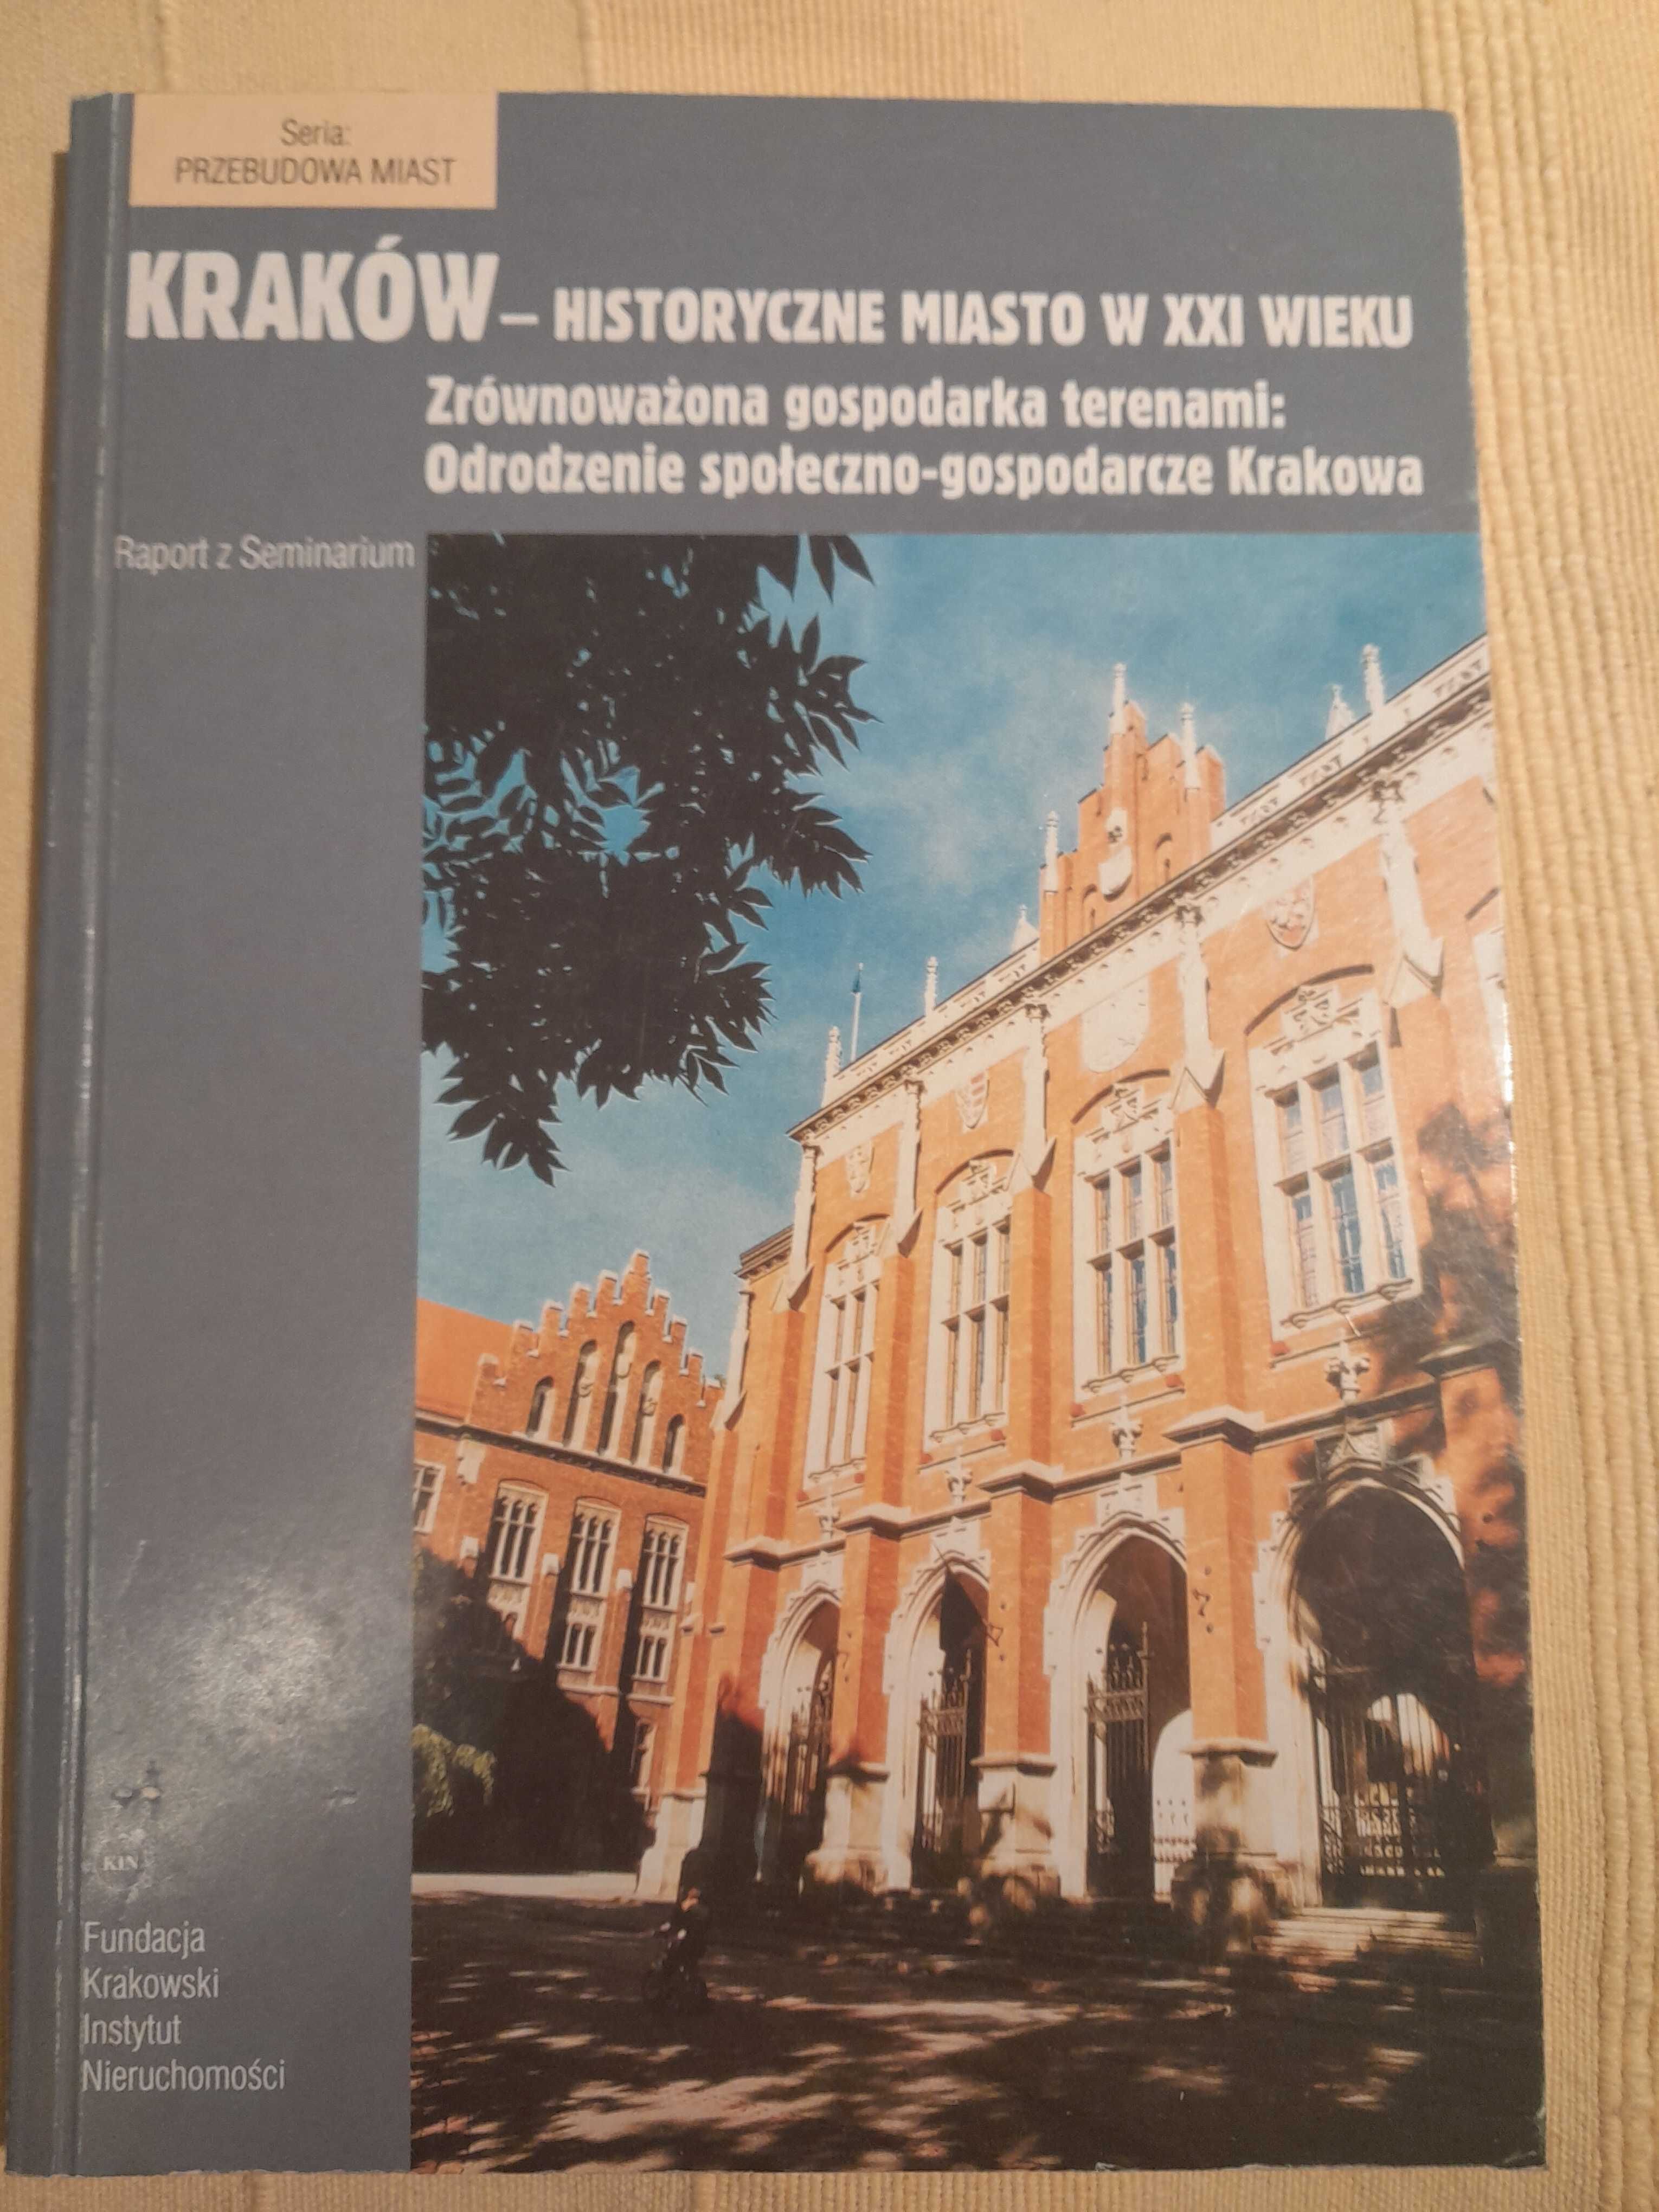 Kraków historyczne miasto w XXI wieku